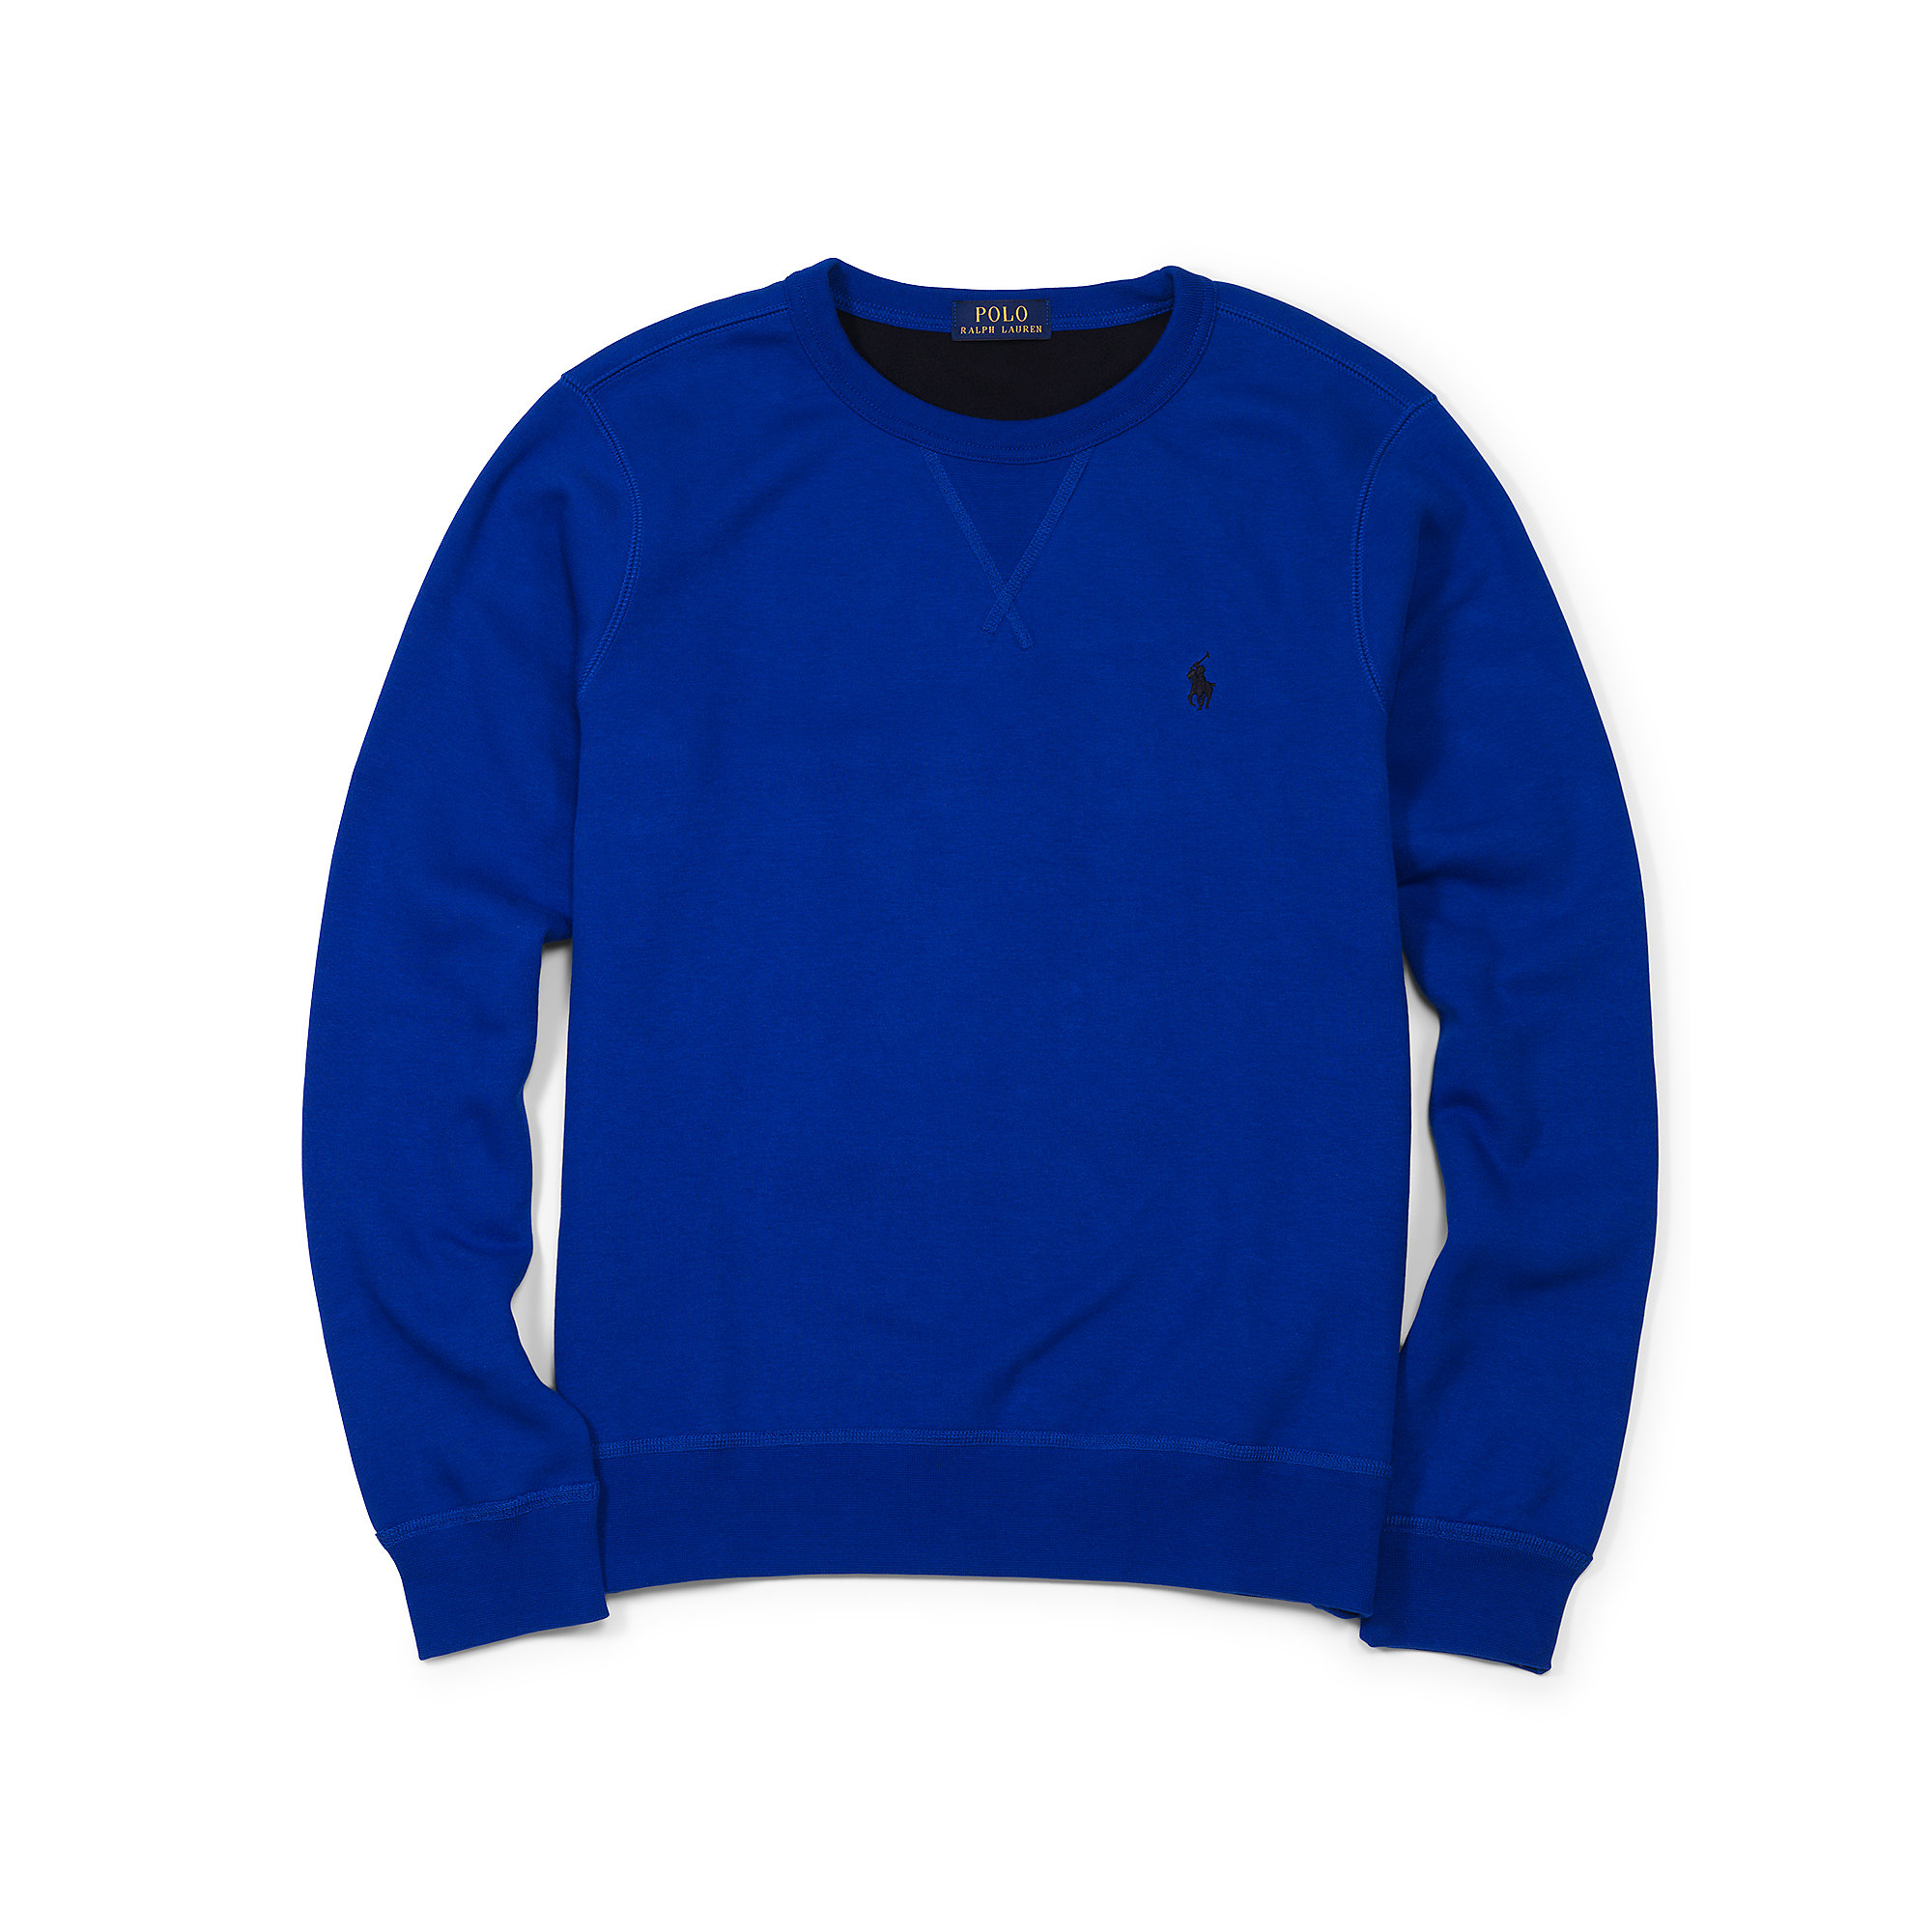 Polo Ralph Lauren Fleece Crewneck Sweatshirt in Blue for Men - Lyst